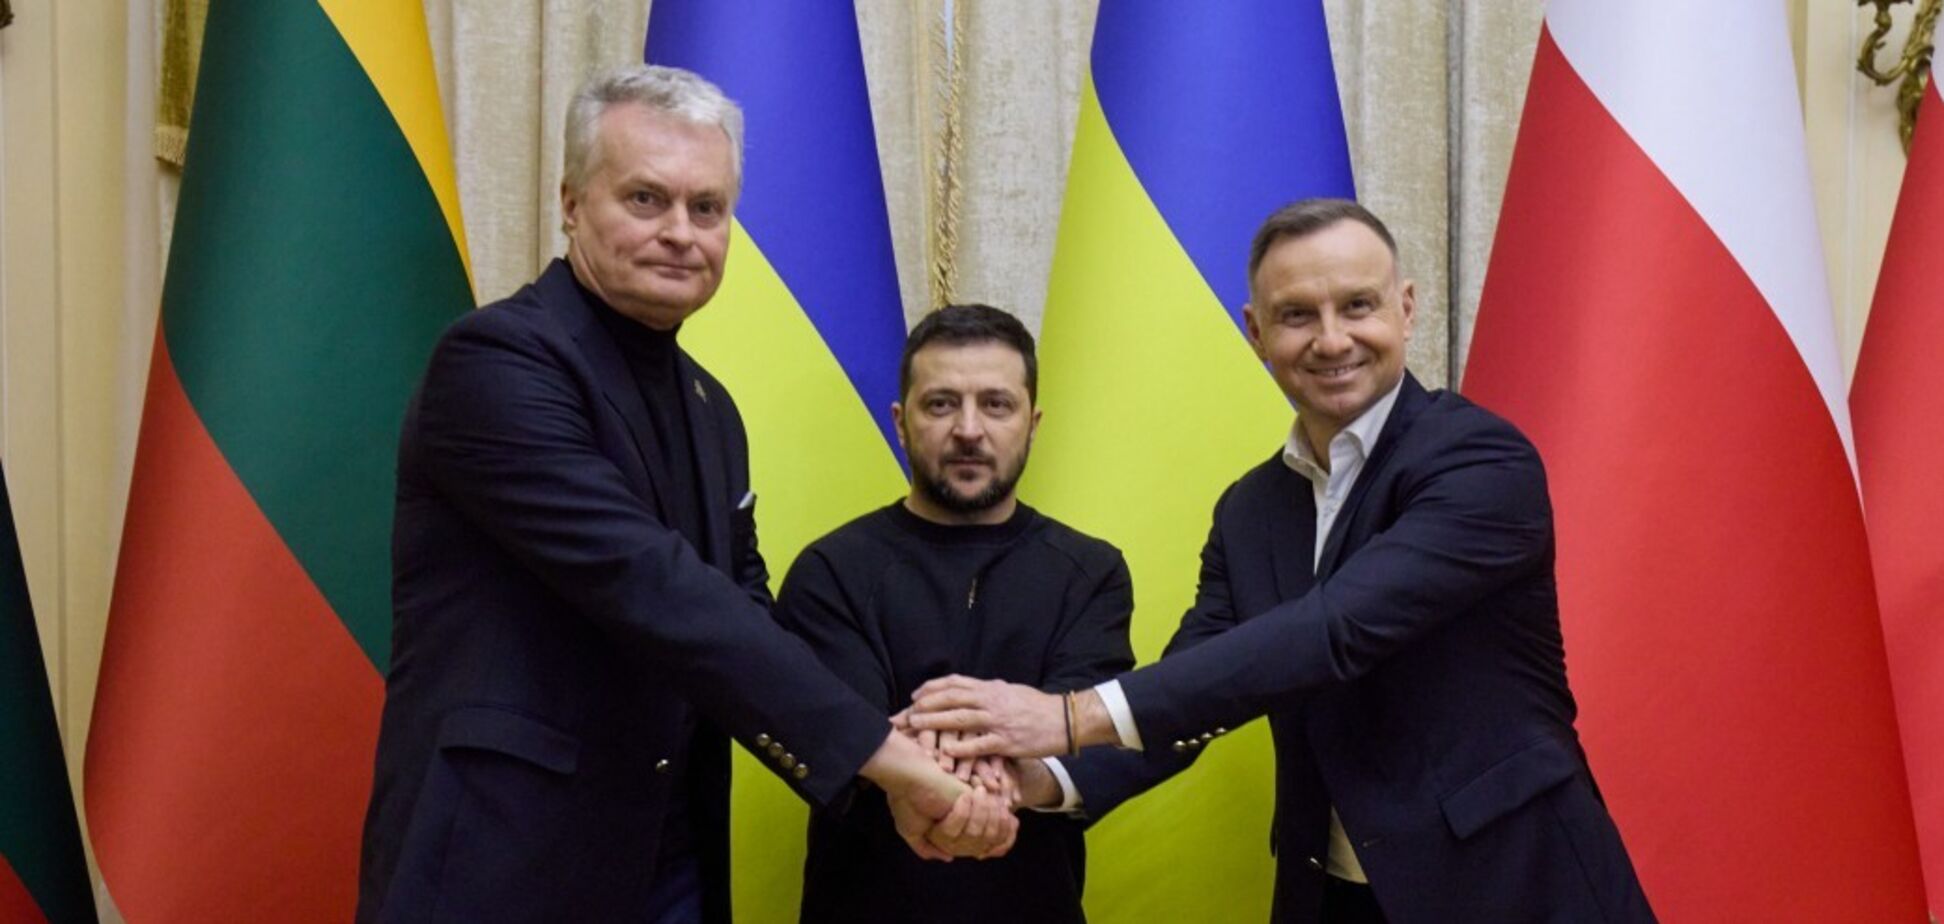 Зеленский, Дуда и Науседа во Львове обсудили снабжение Leopard для Украины и подписали декларацию Люблинского треугольника. Видео